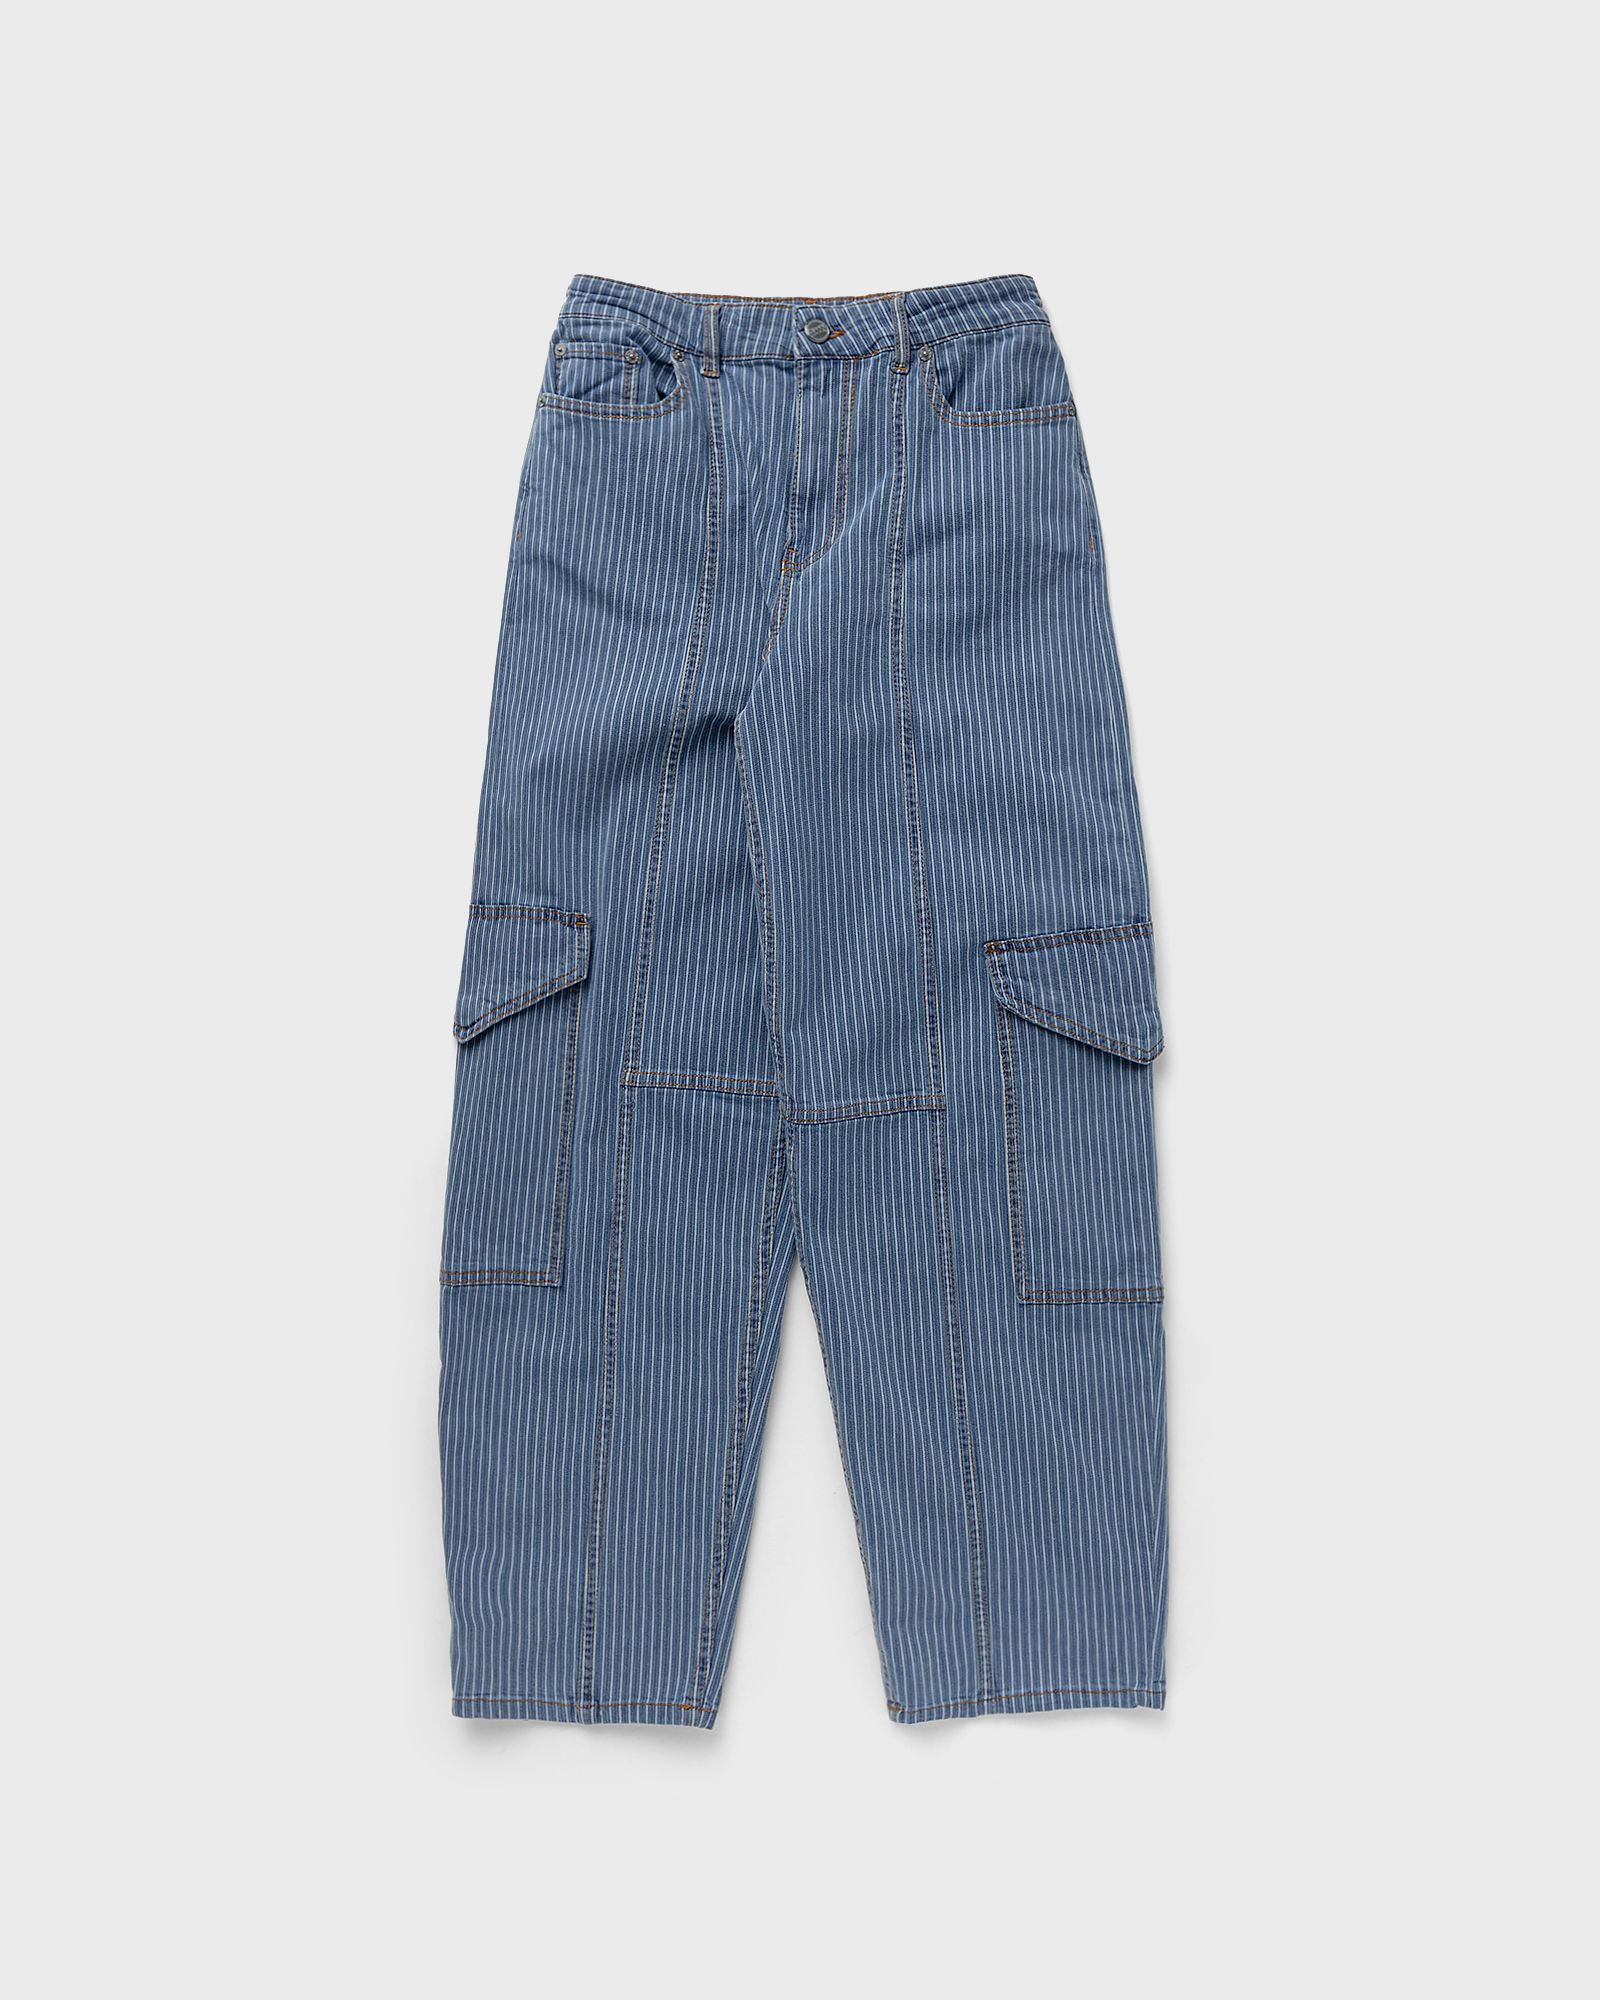 Ganni - light stripe denim cargo pants women jeans blue in größe:m